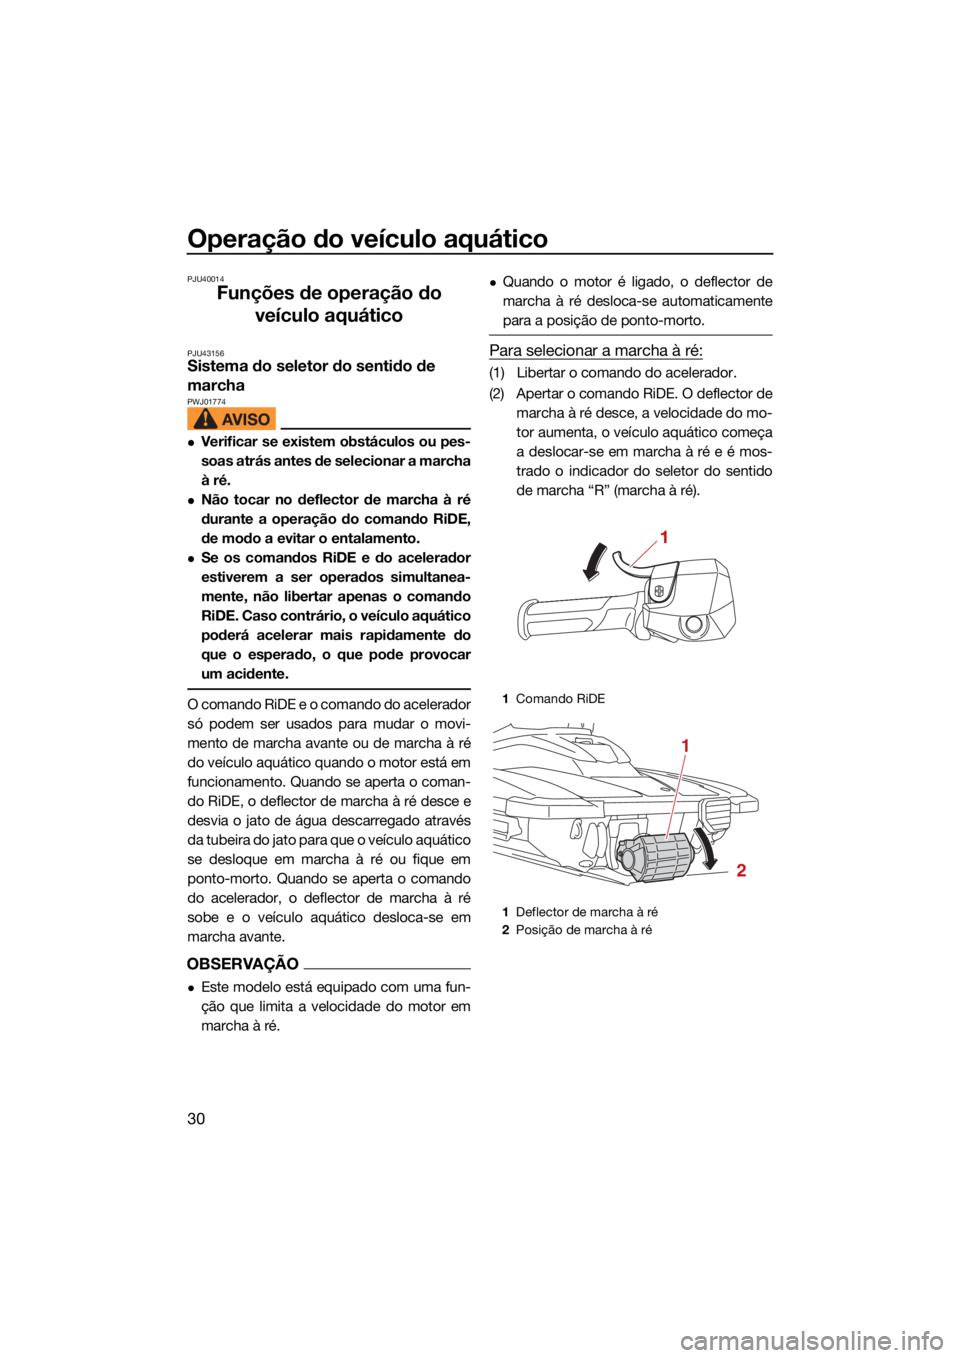 YAMAHA JETBLASTER 2022  Manual de utilização (in Portuguese) Operação do veículo aquático
30
PJU40014
Funções de operação do veículo aquático
PJU43156Sistema do seletor do sentido de 
marcha 
PWJ01774
Verificar se existem obstáculos ou pes-
soas a